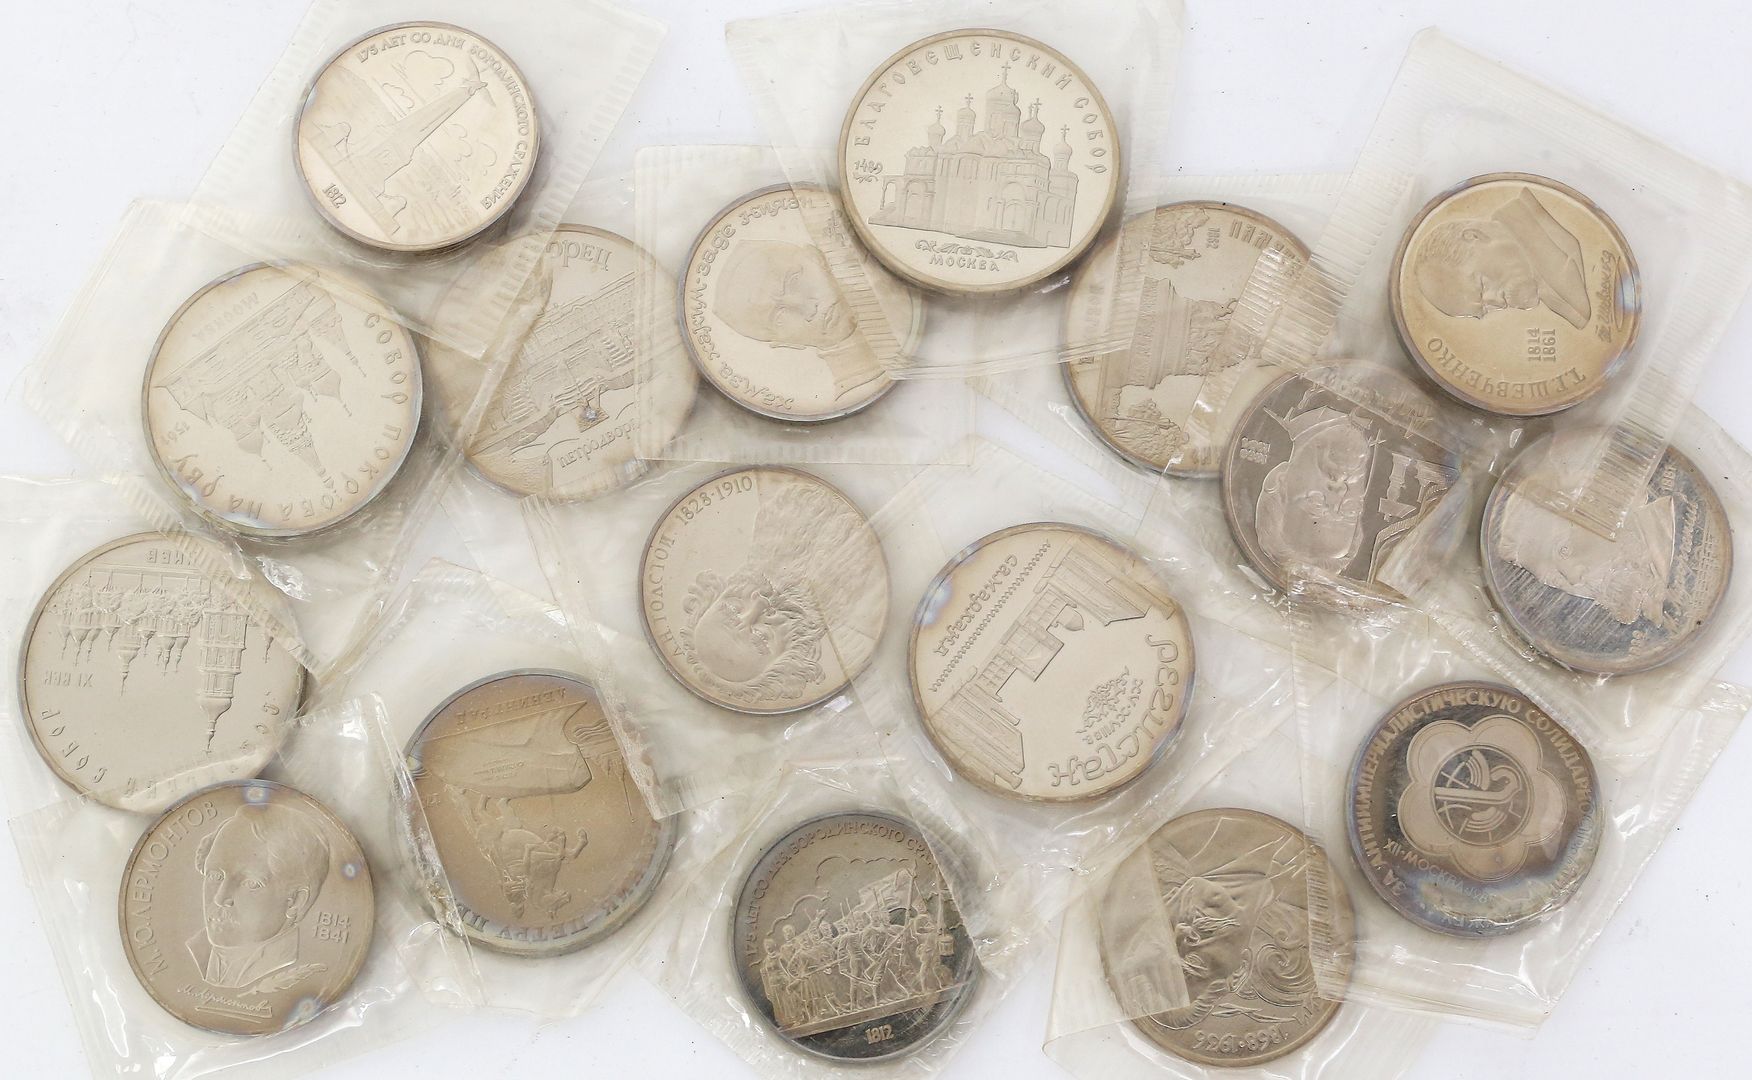 Sammlung von 17 Gedenkmünzen, Russland, 1988/89.